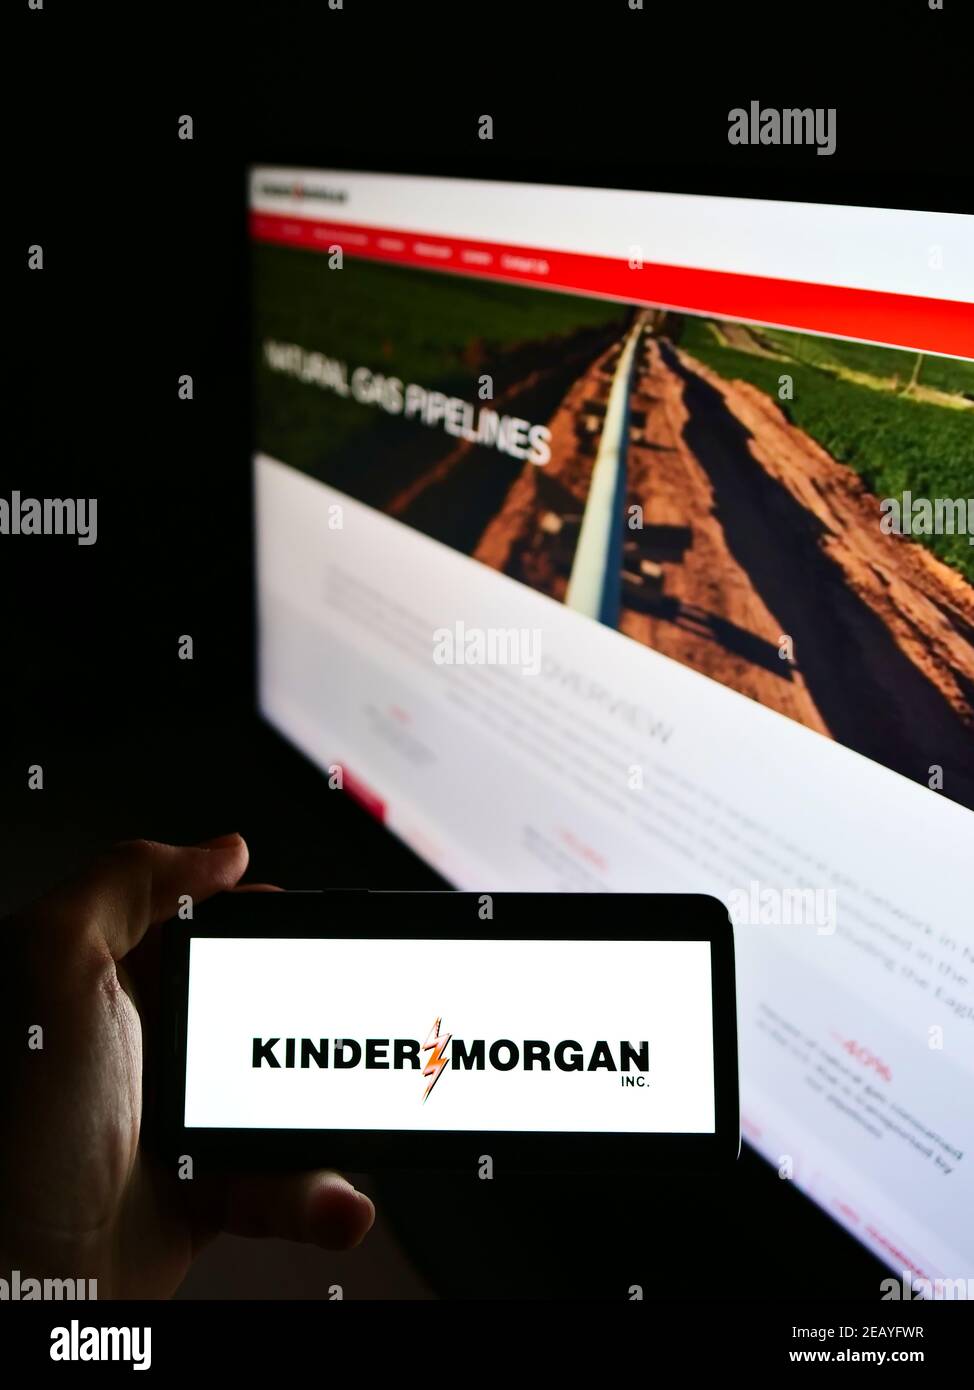 Persona que sostiene el teléfono celular con el logotipo de la empresa estadounidense de infraestructura energética Kinder Morgan Inc. En la pantalla al frente de la página web. Enfoque en la pantalla del teléfono. Foto de stock